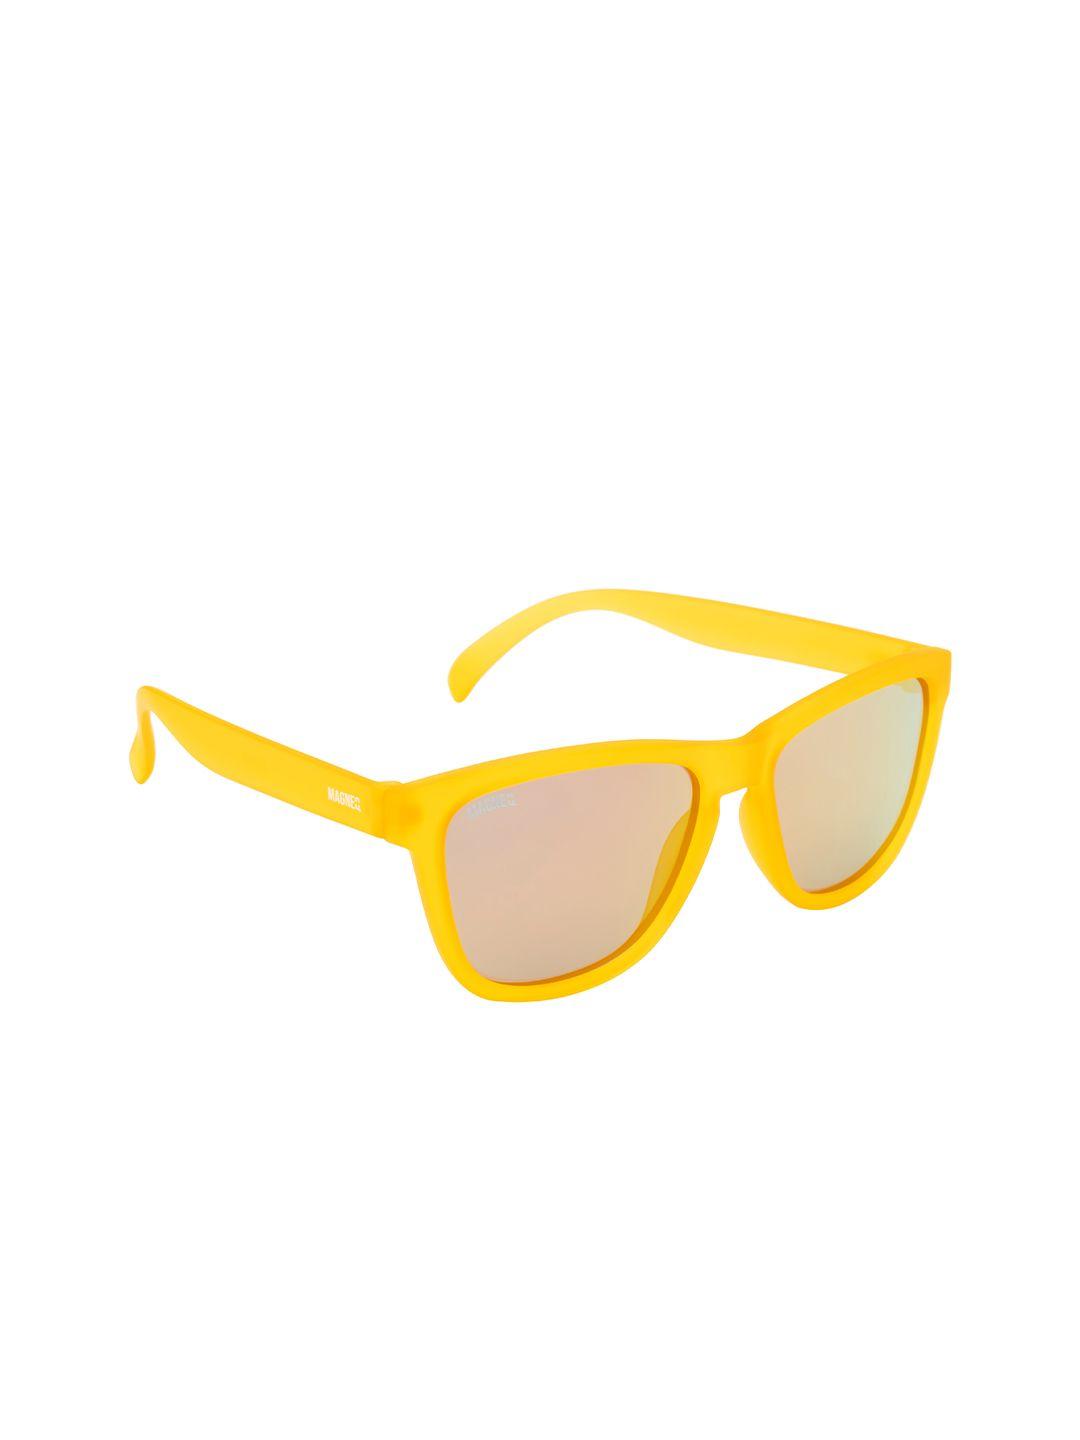 magneq unisex lens & square sunglasses with polarised lens mg 6030/s c4 5318